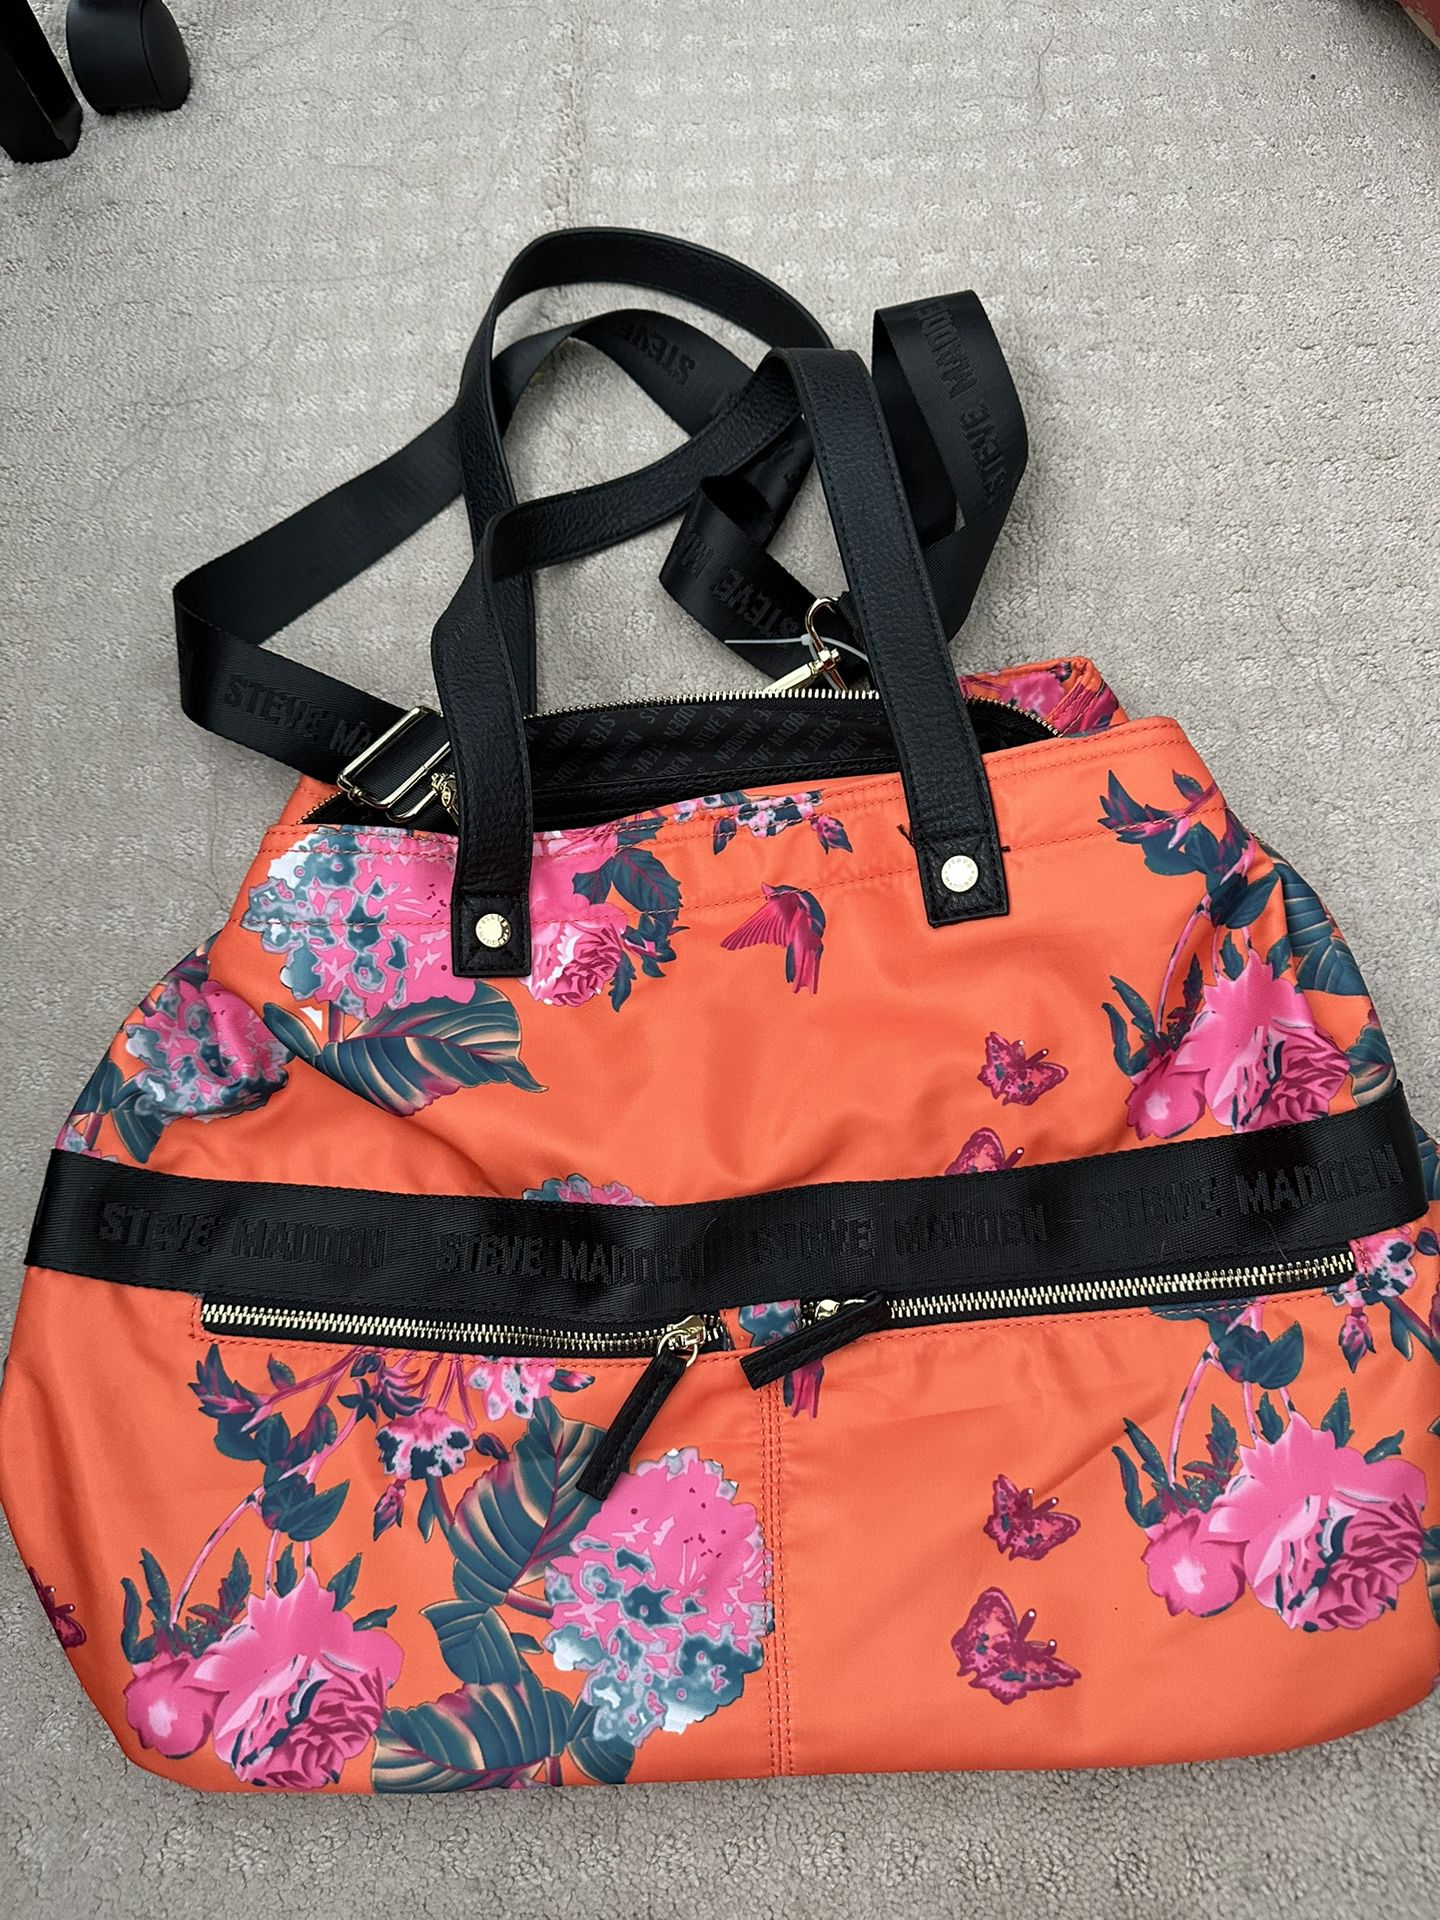 Steve Madden Orange Floral Duffel Bag